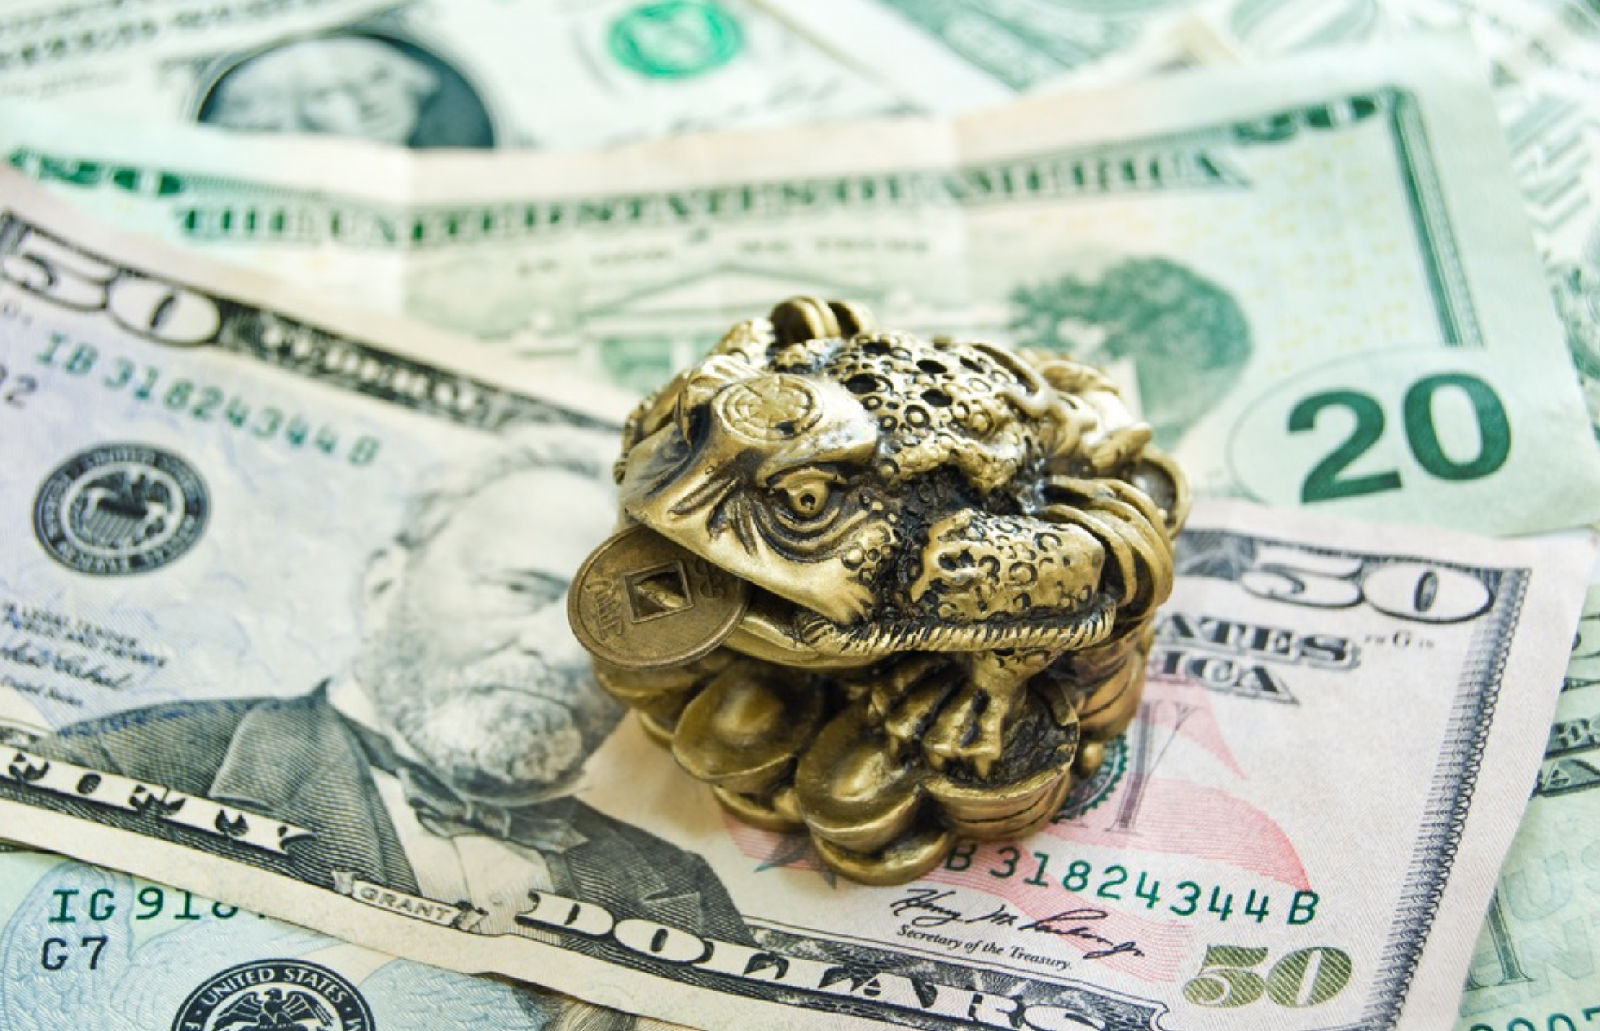 Сувенирная лягушка с монетой в руках сидит на денежных купюрах